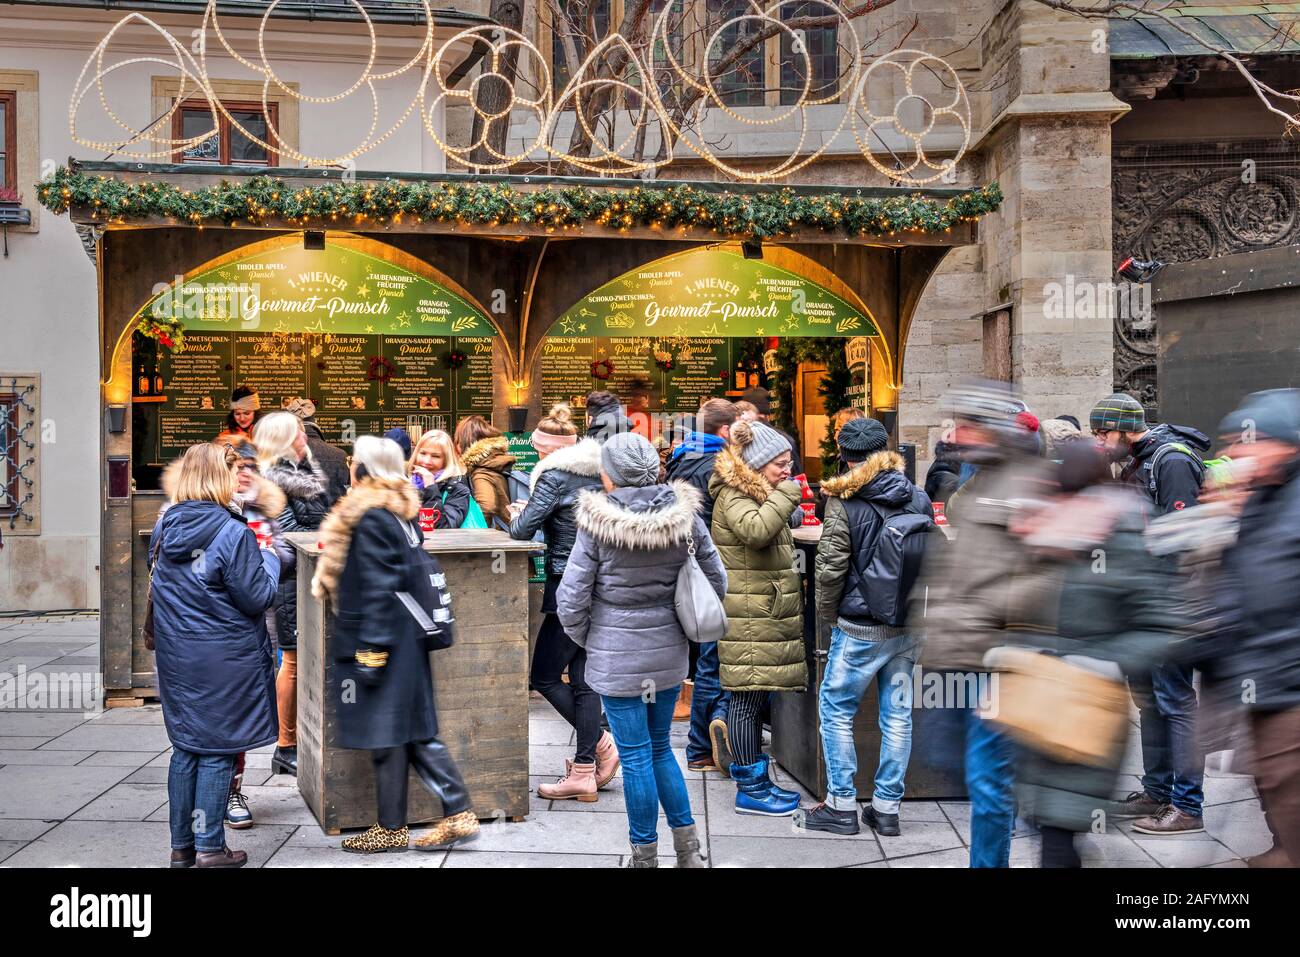 Les gens en buvant du vin chaud gluhwein Stephansplatz, Marché de Noël, Vienne, Autriche Banque D'Images